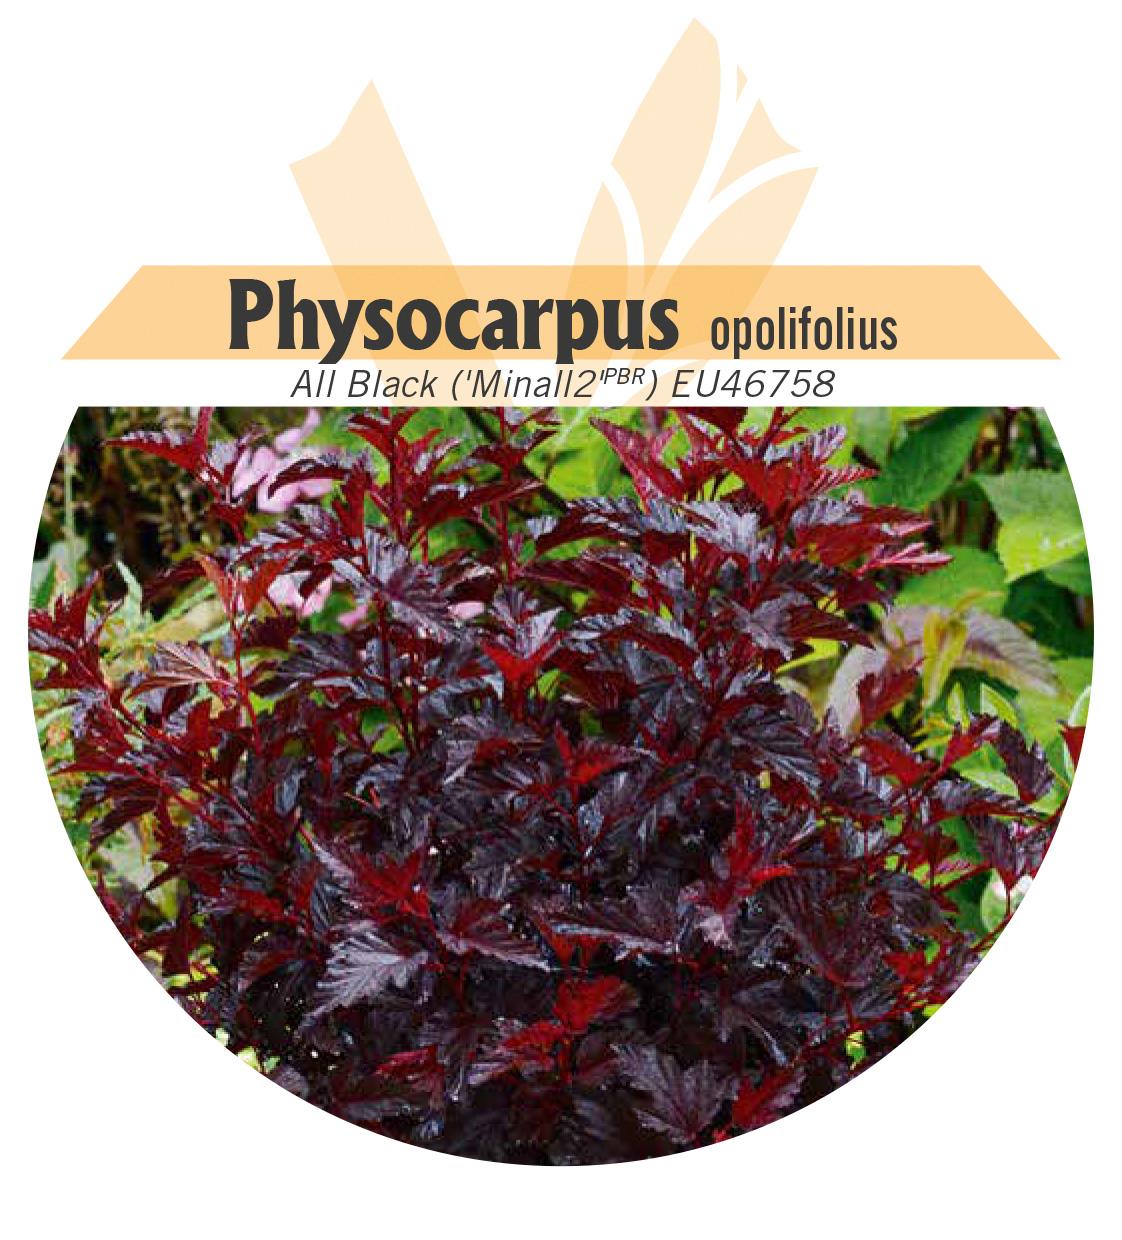 Physocarpus opolifolius